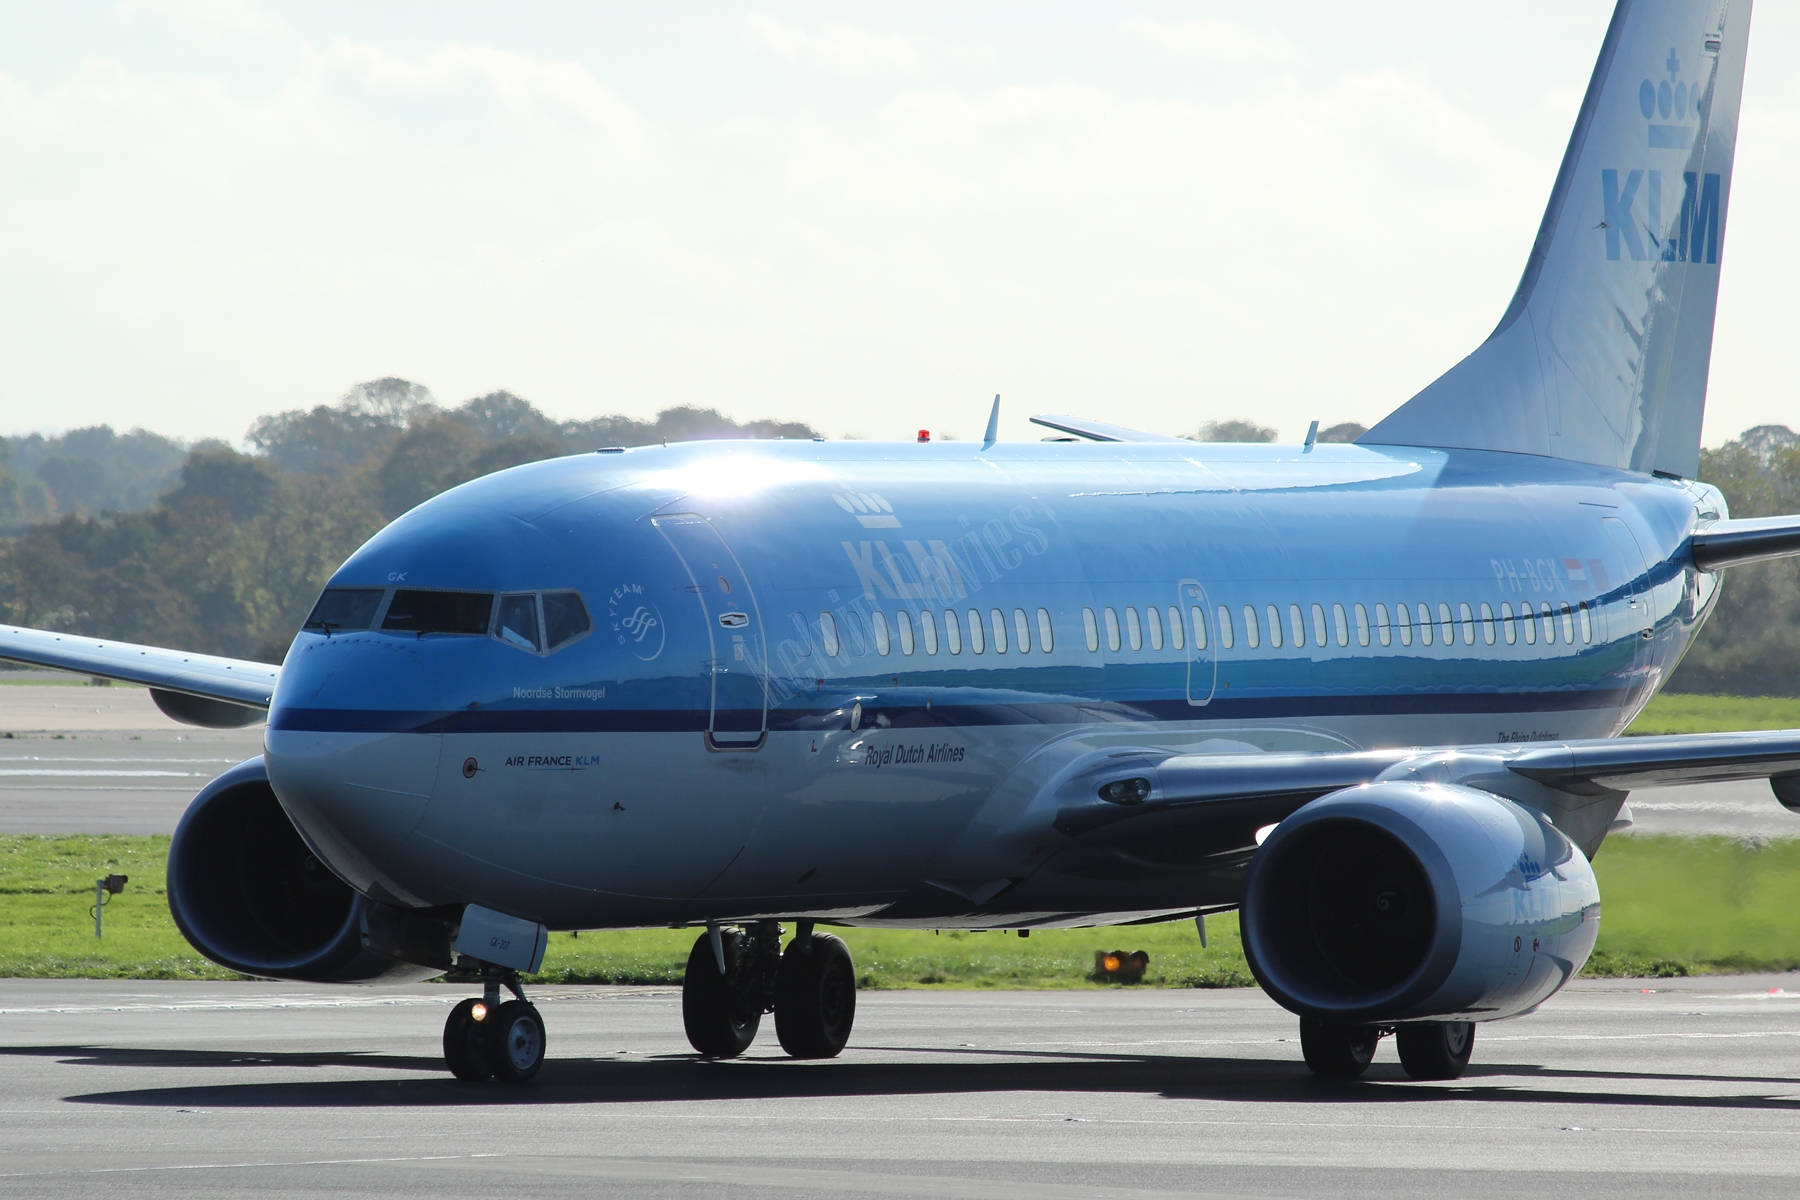 KLM 737 PH-BGK